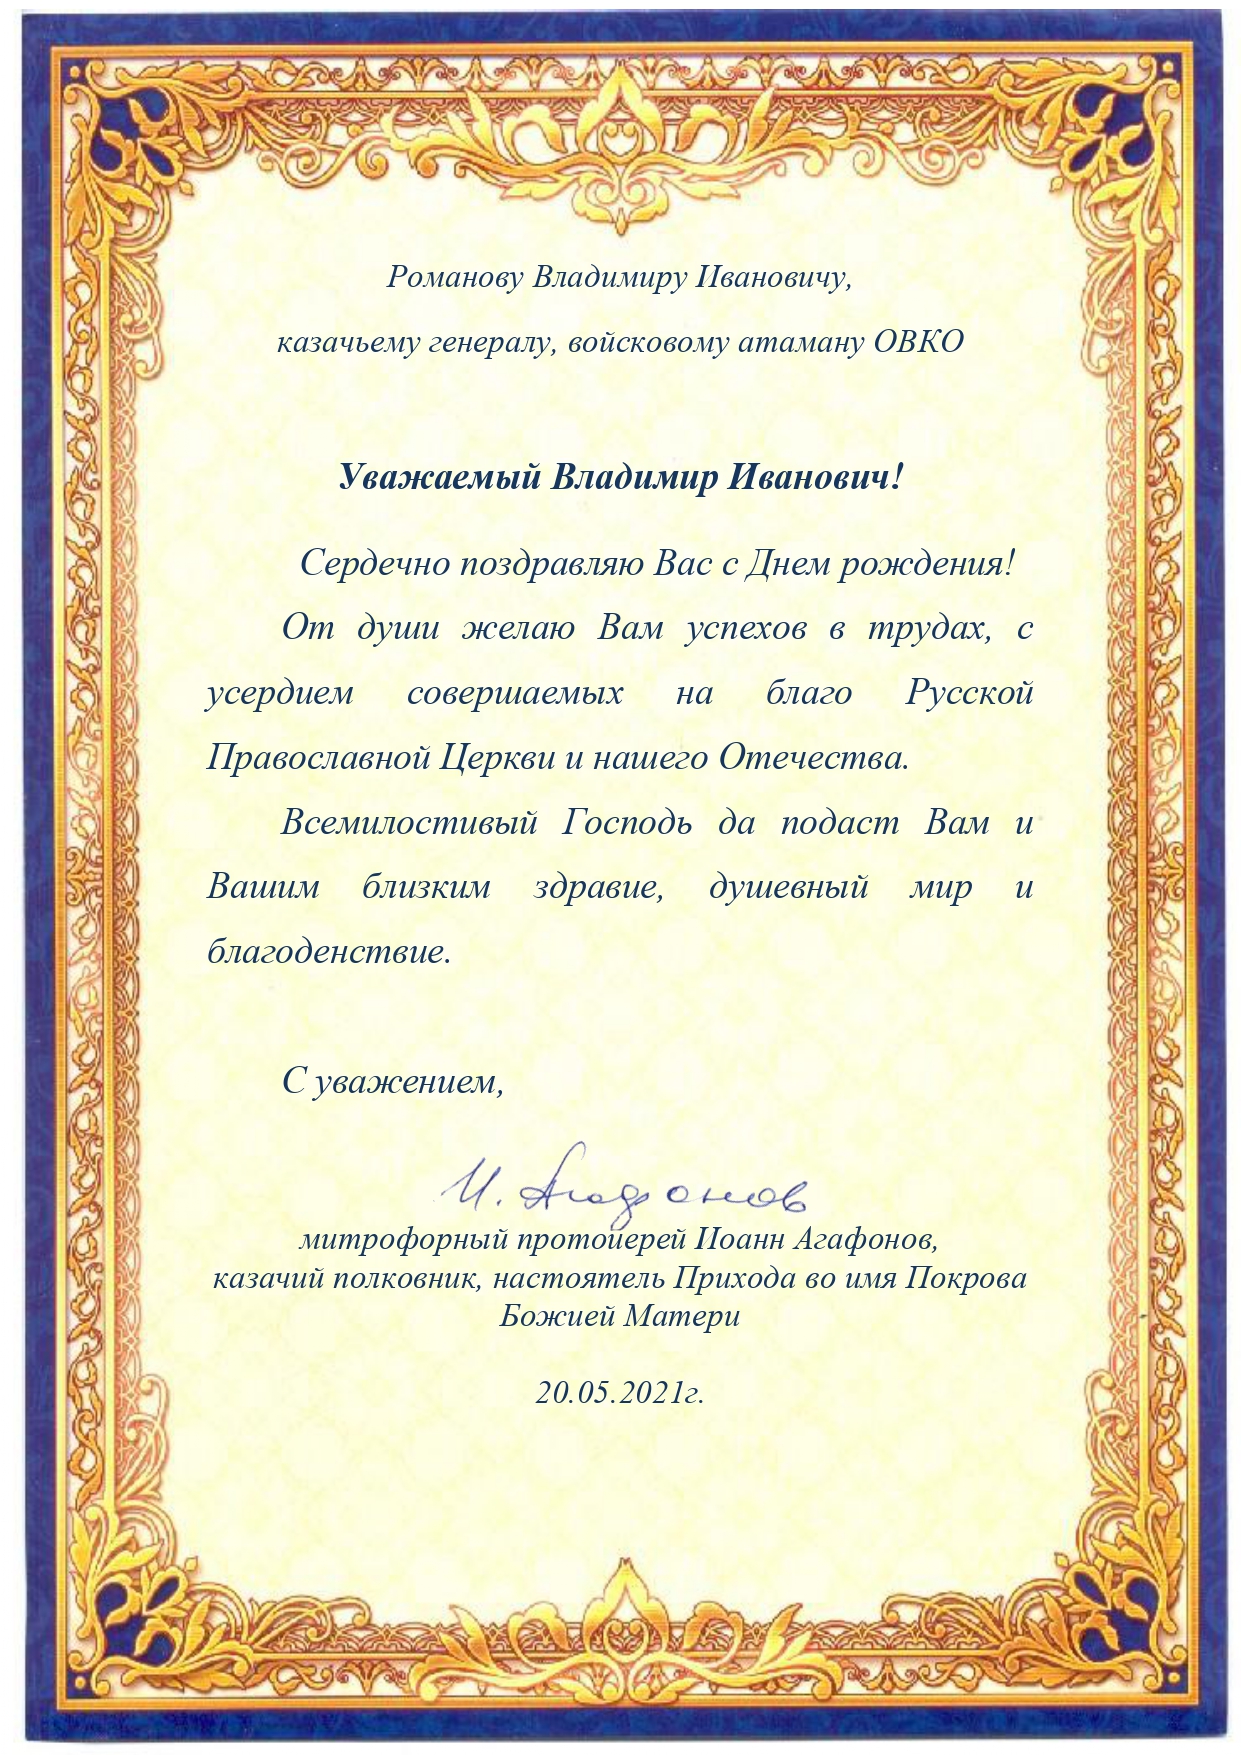 Поздравление с днем рождения атамана ОКВ В.И. Романова